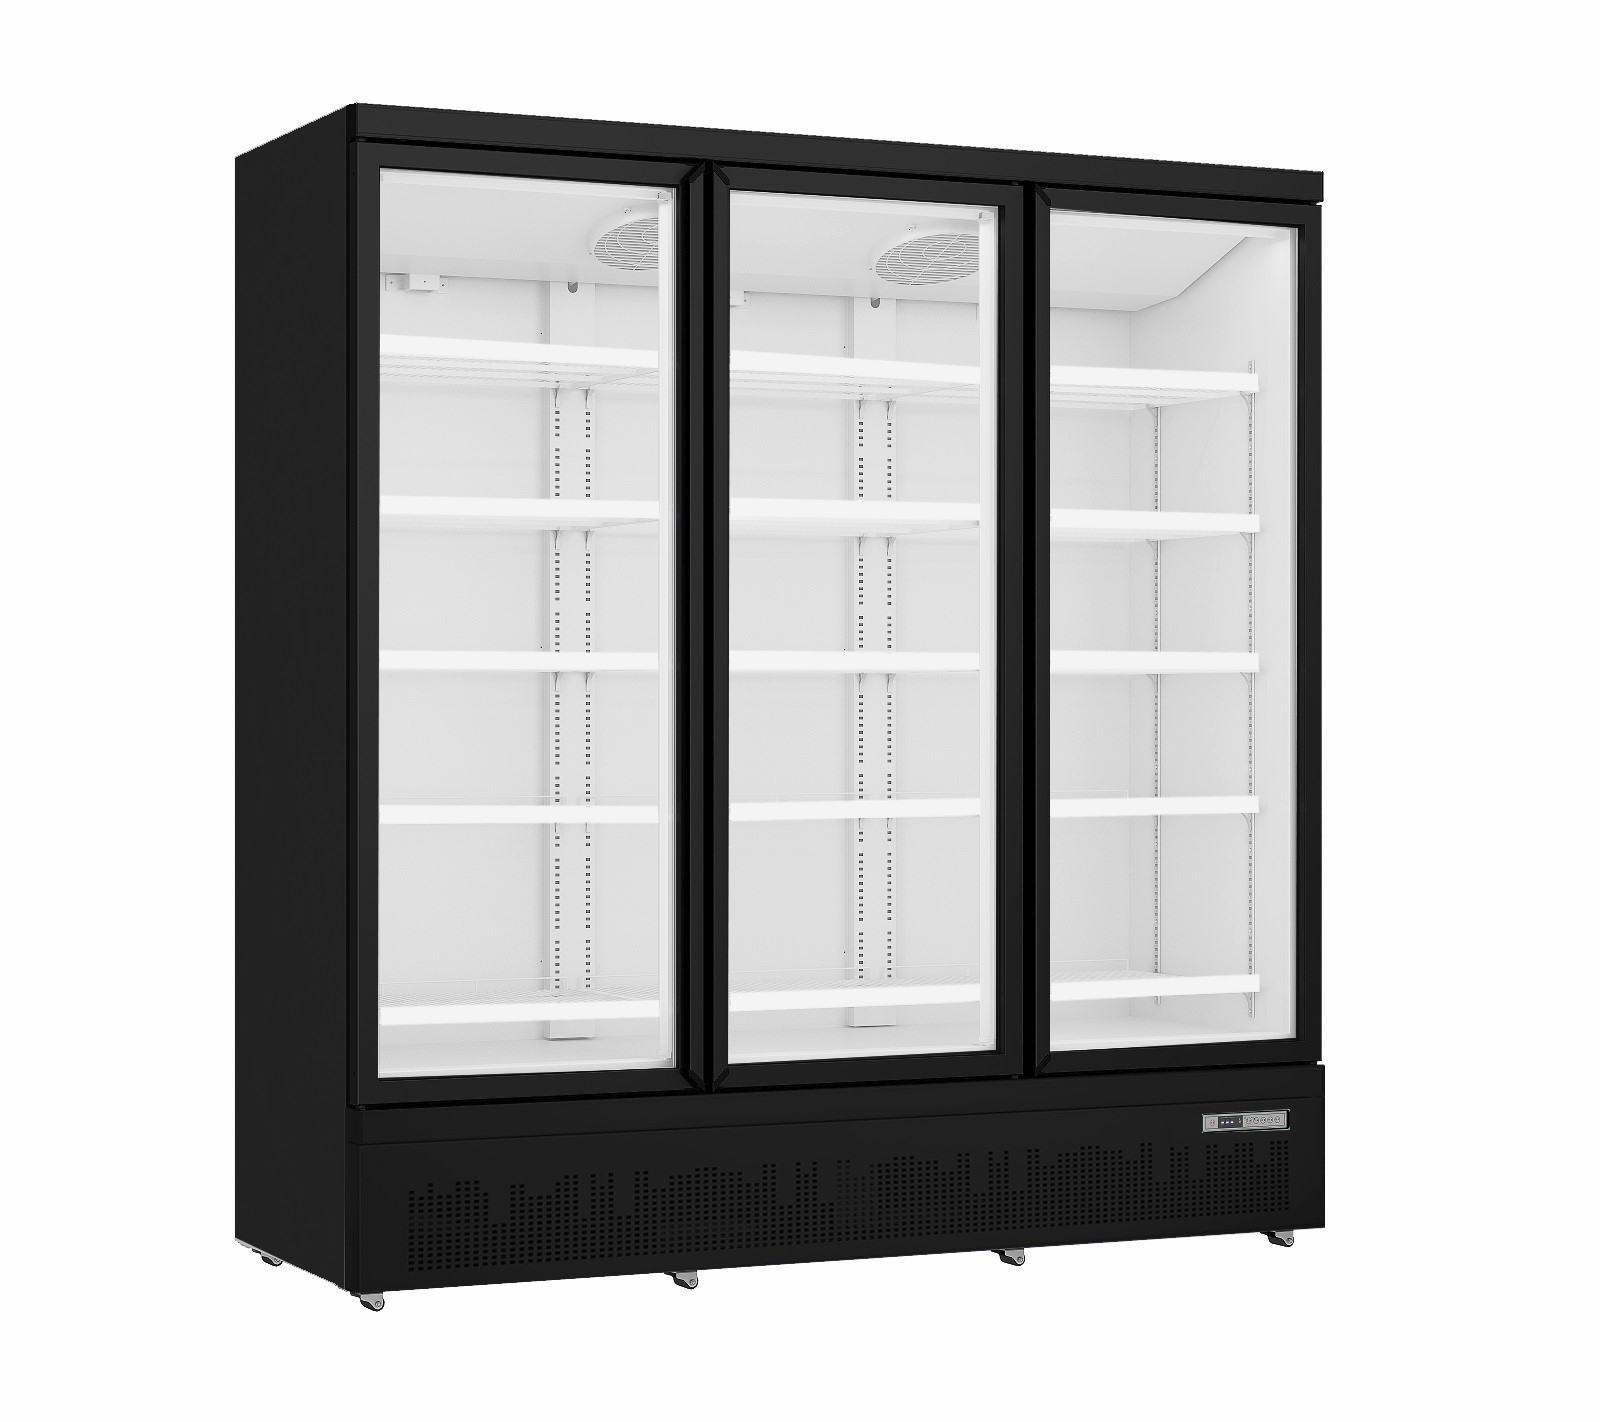 Kühlschrank mit Glastüren, Modell GTK 1530 PRO, Breite 1880mm, Tiefe 710mm, Höhe 2003mm, Farbe Schwarz